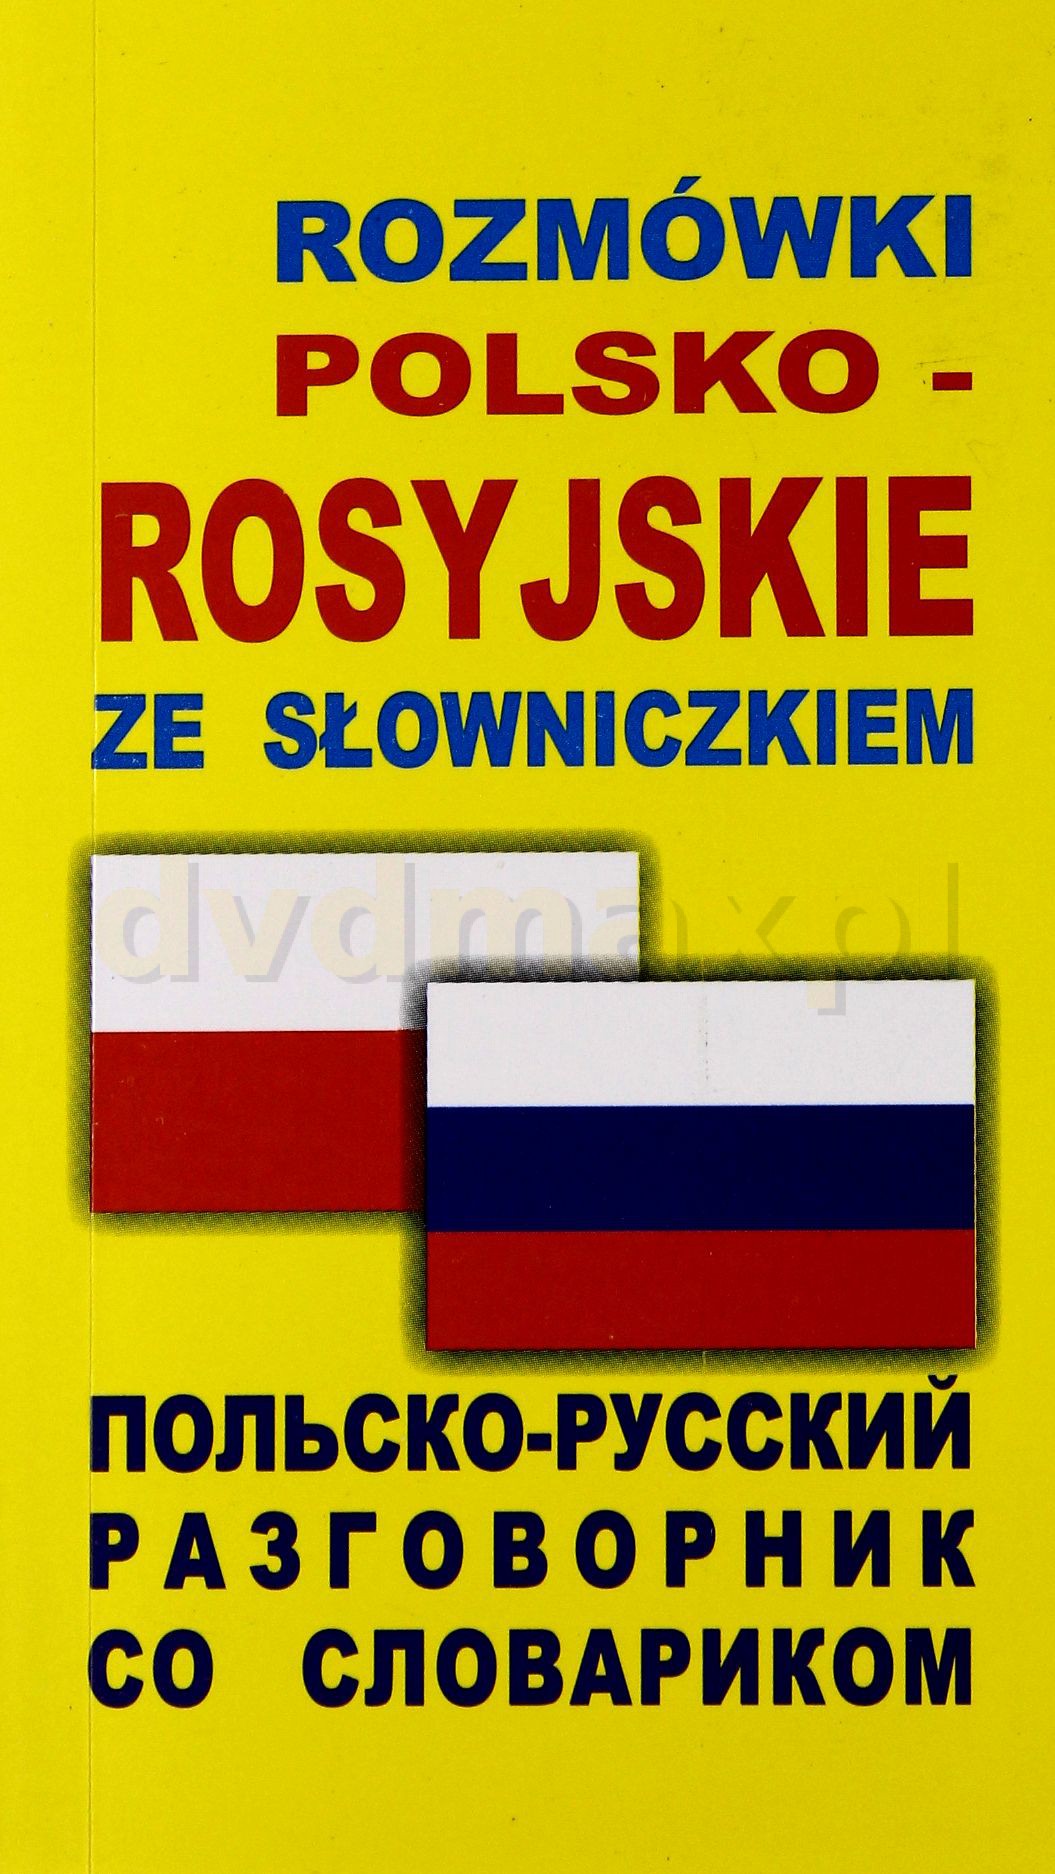 Русский язык в Польше